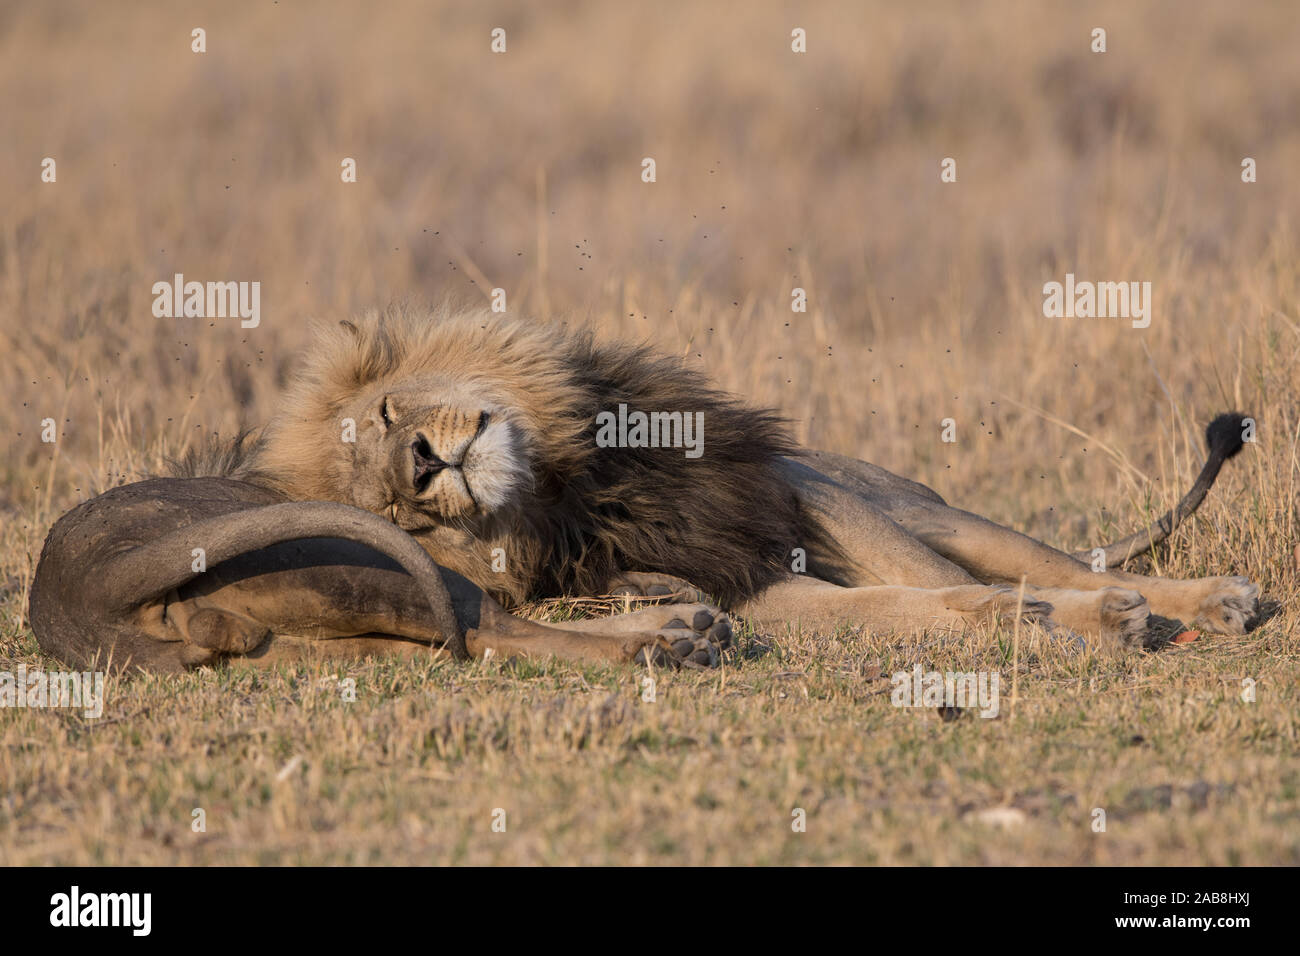 Deux affectueux lion (Panthera leo) frères en NP Moremi (Khwai), Botswana Banque D'Images